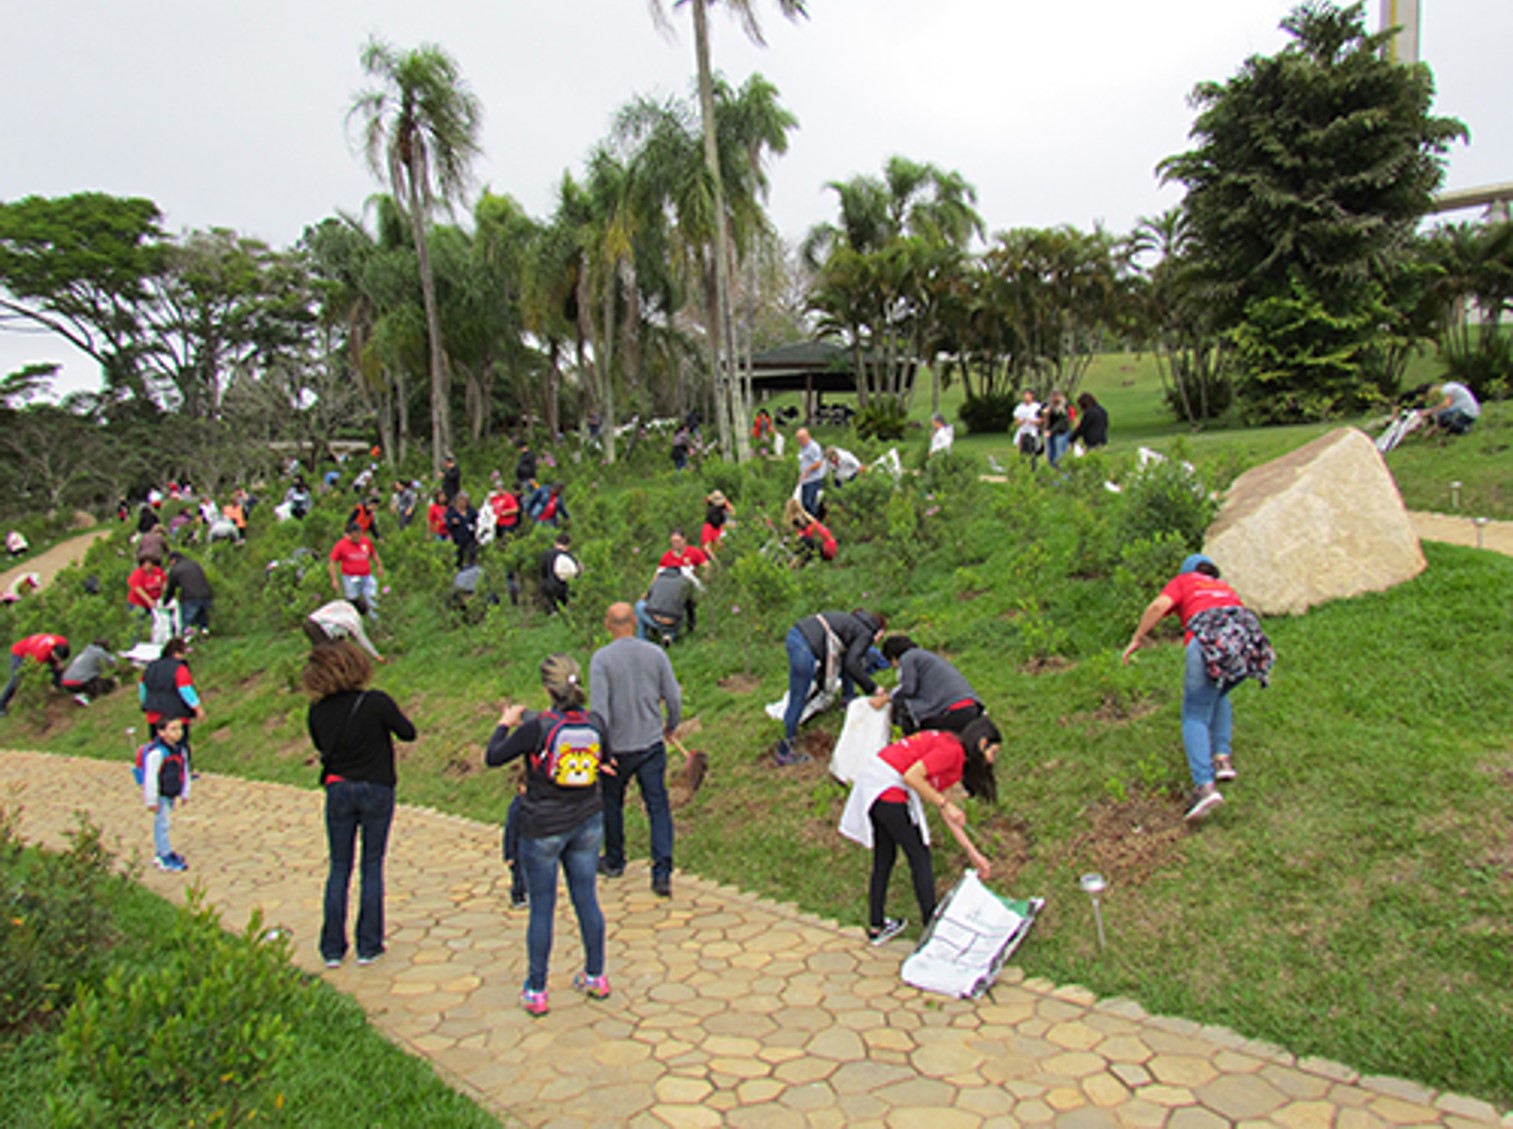 Caravanistas do Johrei Center Vila Rosália (SP) dedicam no Solo Sagrado de Guarapiranga